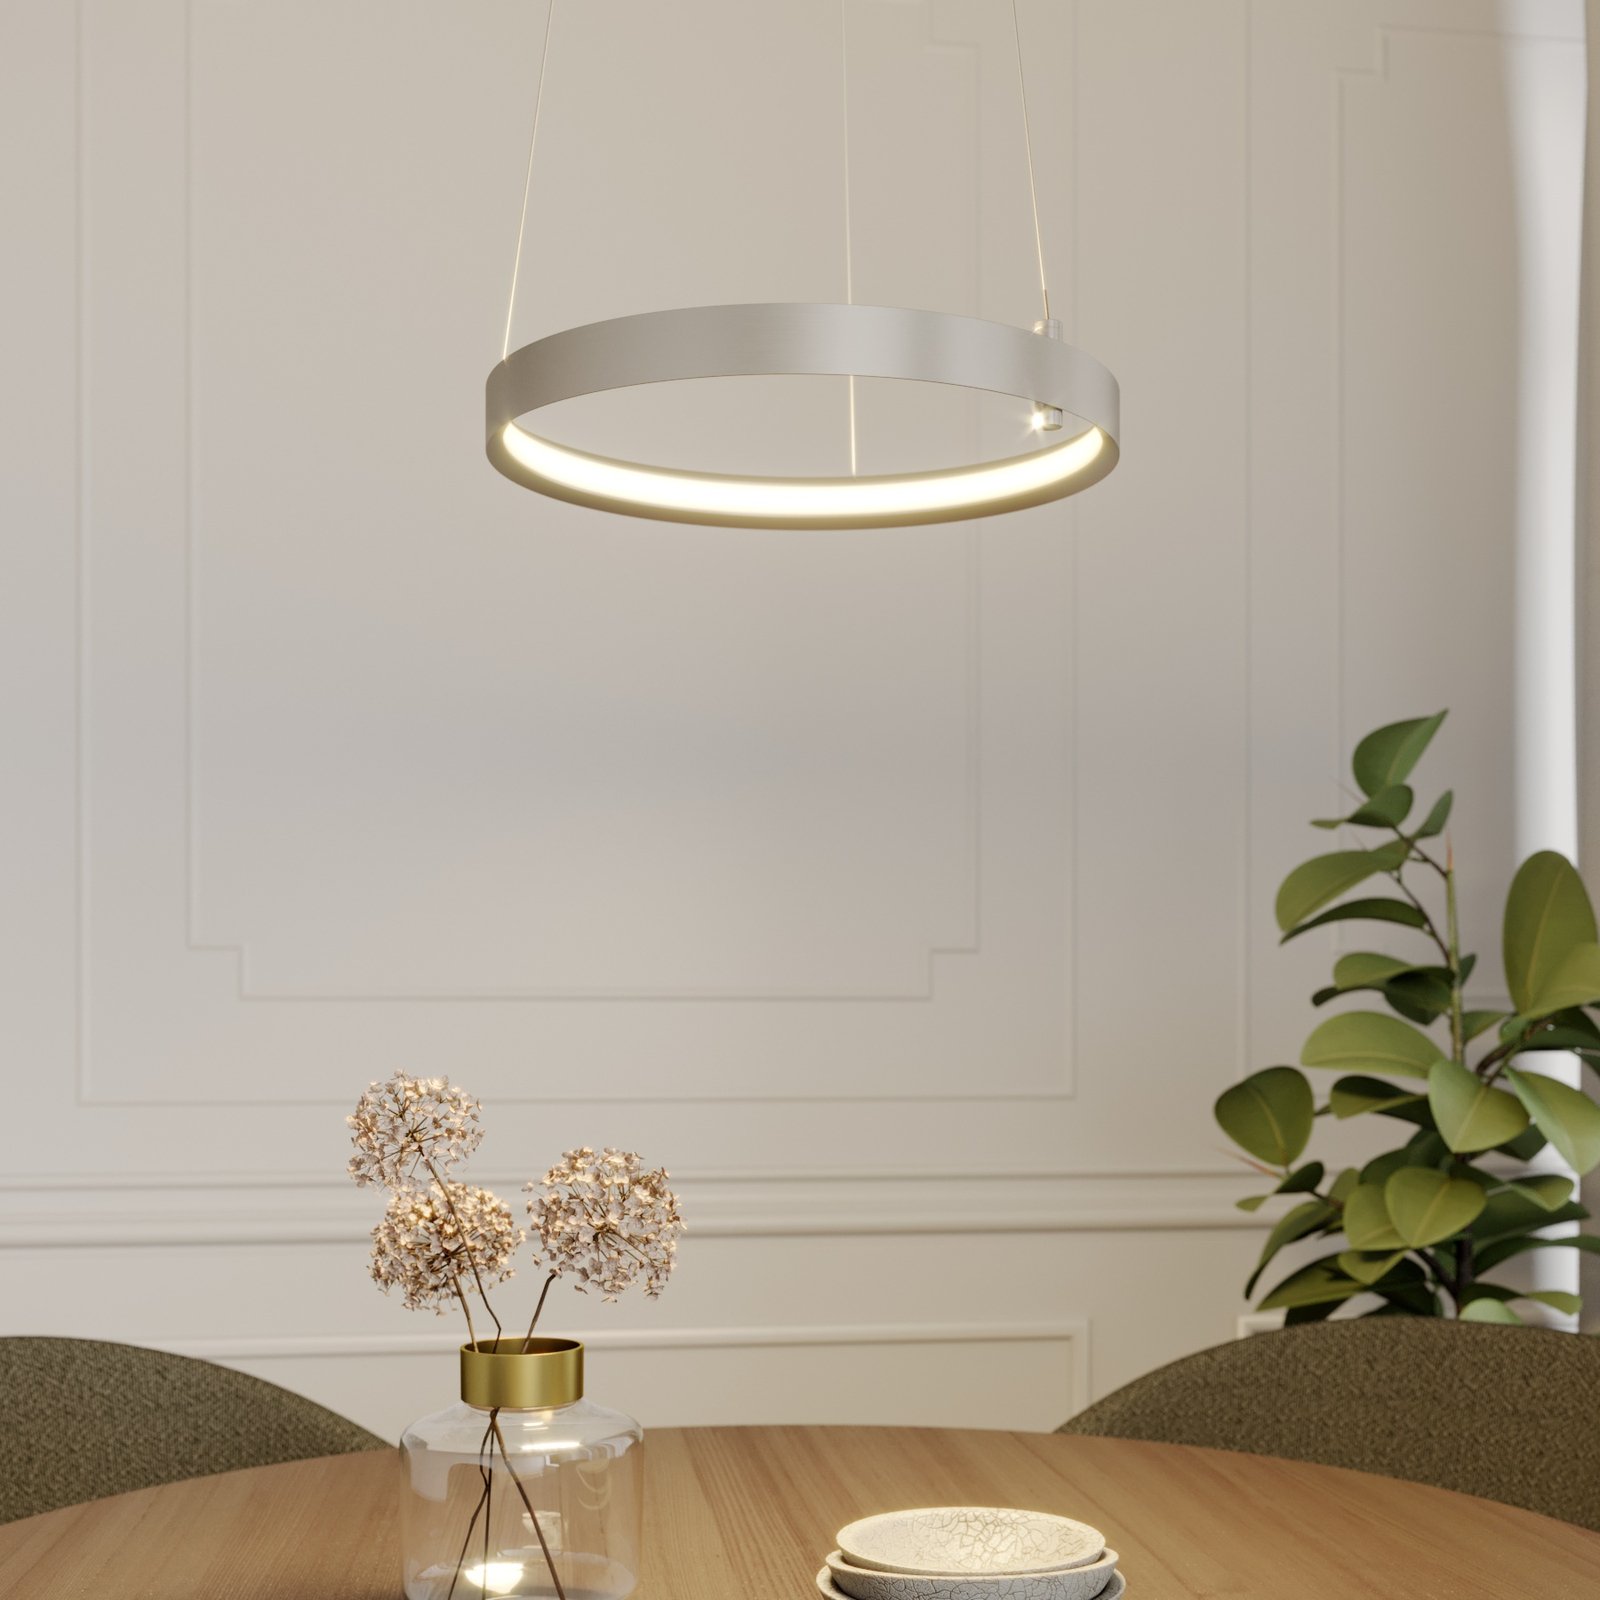 Lucande Naylia LED-hengelampe i nikkel, Ø 40 cm